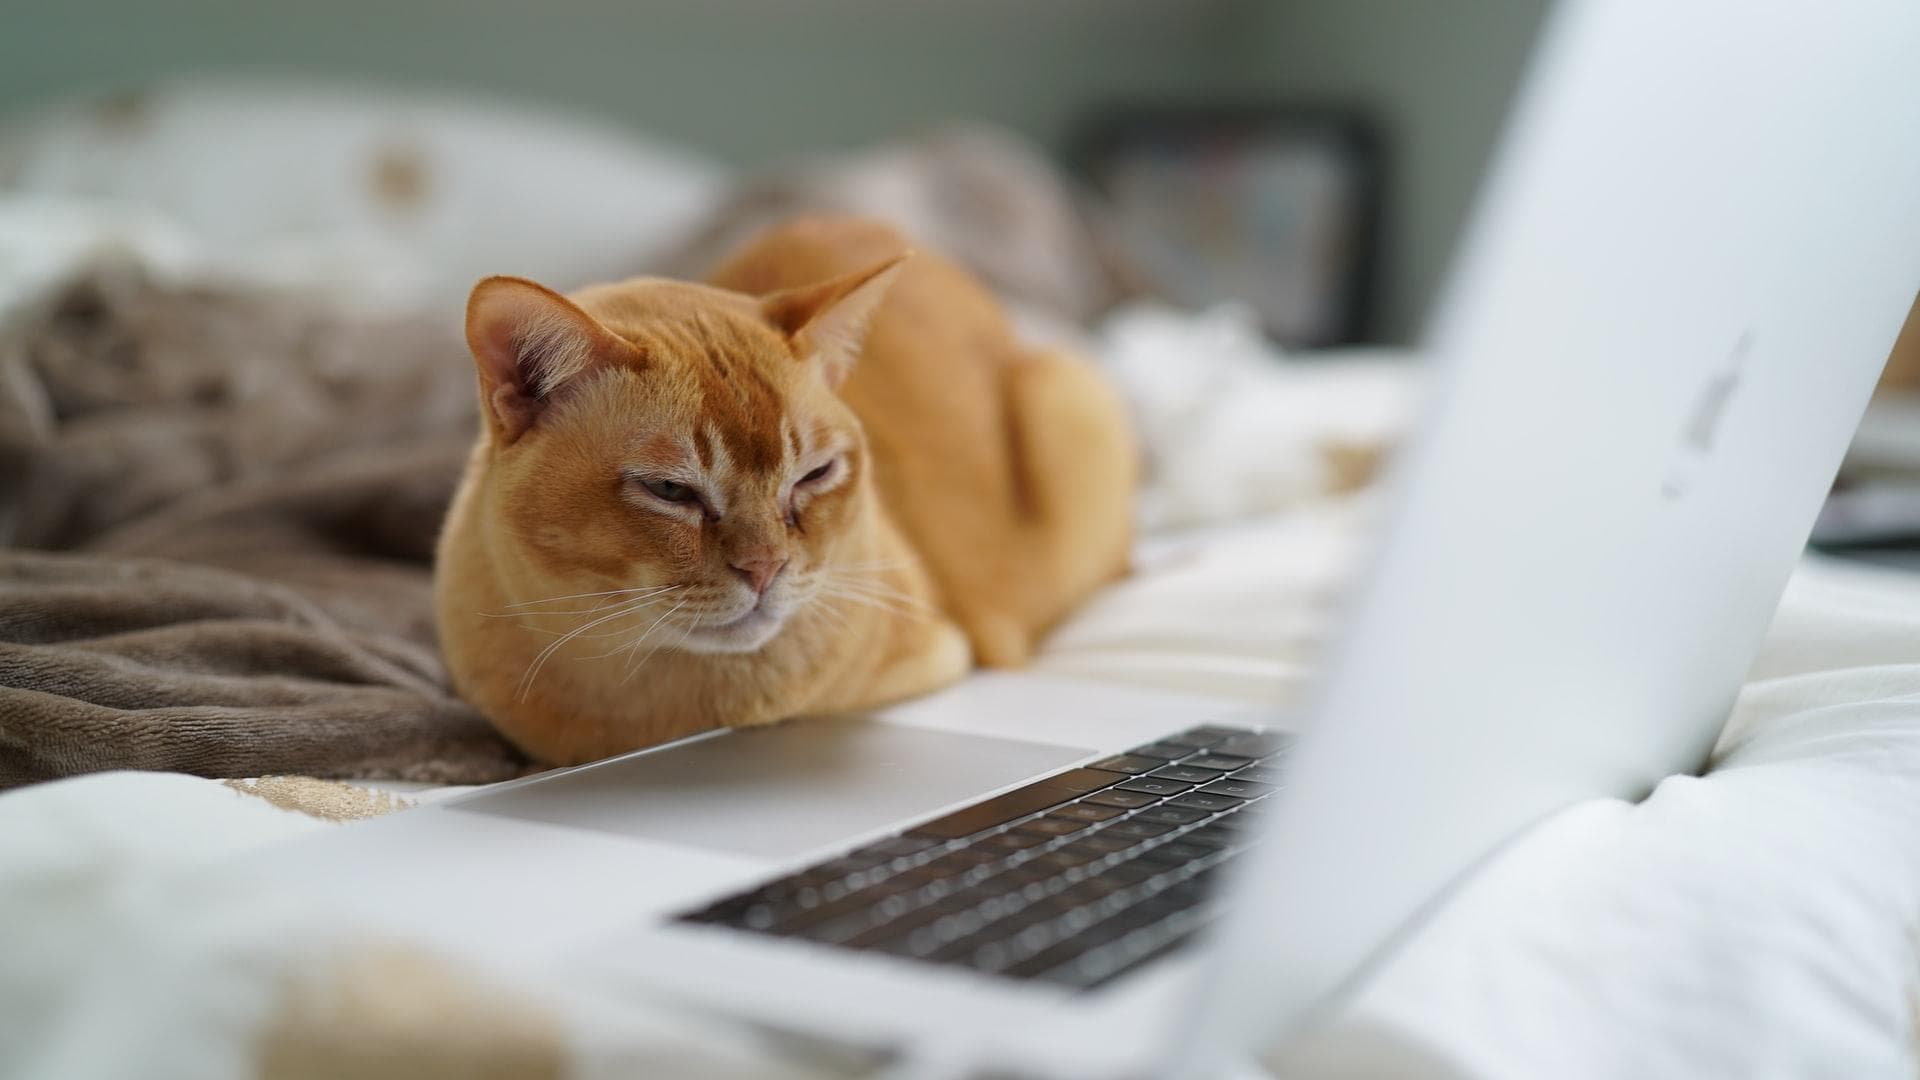 Sleepy cat in front of MacBook